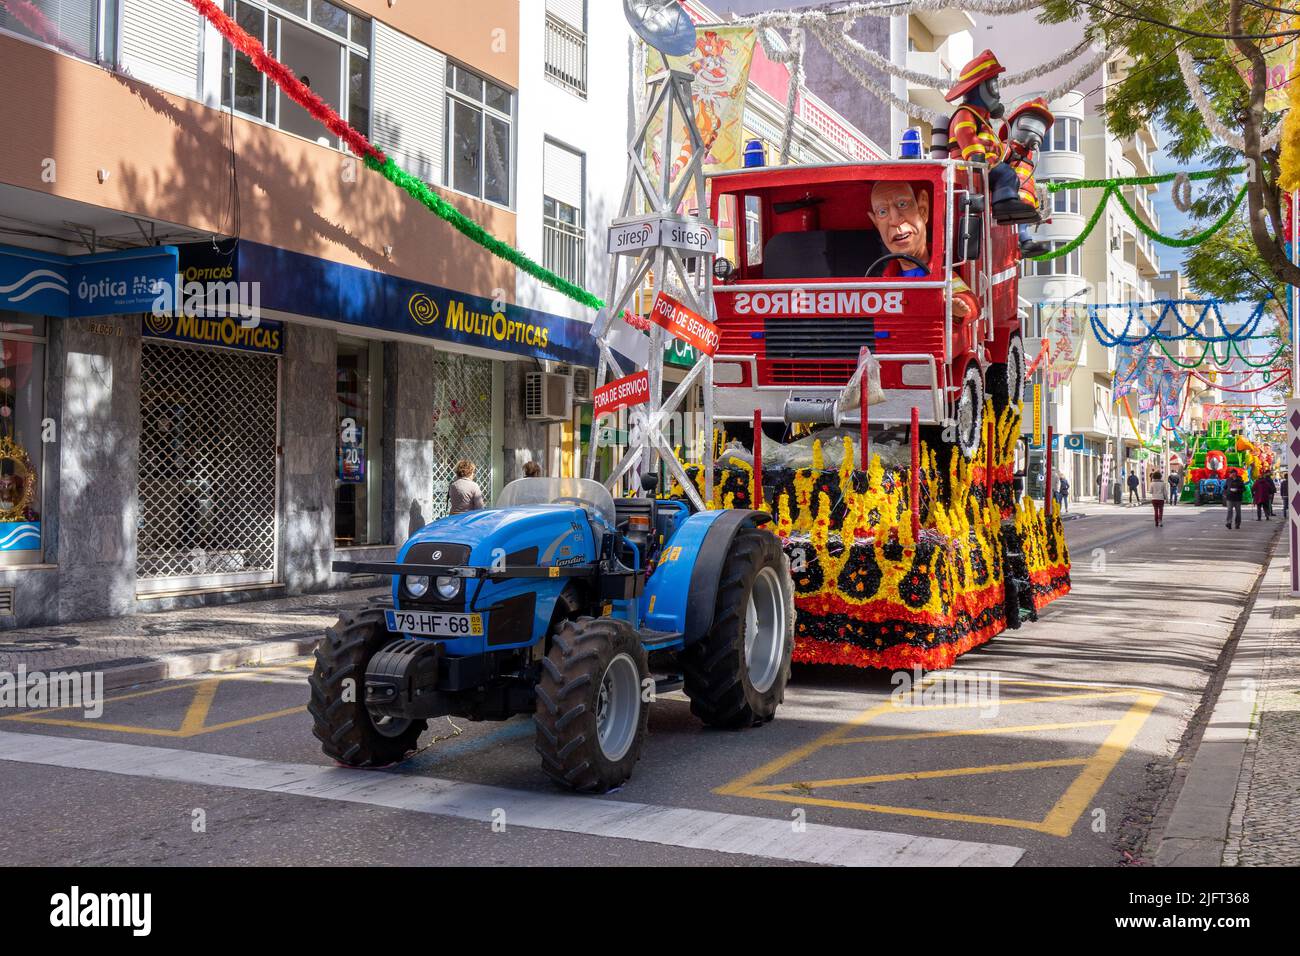 FEBUARY 12, 2018, LOULE, PORTUGAL: Carnaval Flota Con temas políticos y deportivos, Loule es el festival de carnaval continuo más antiguo de Portugal Foto de stock